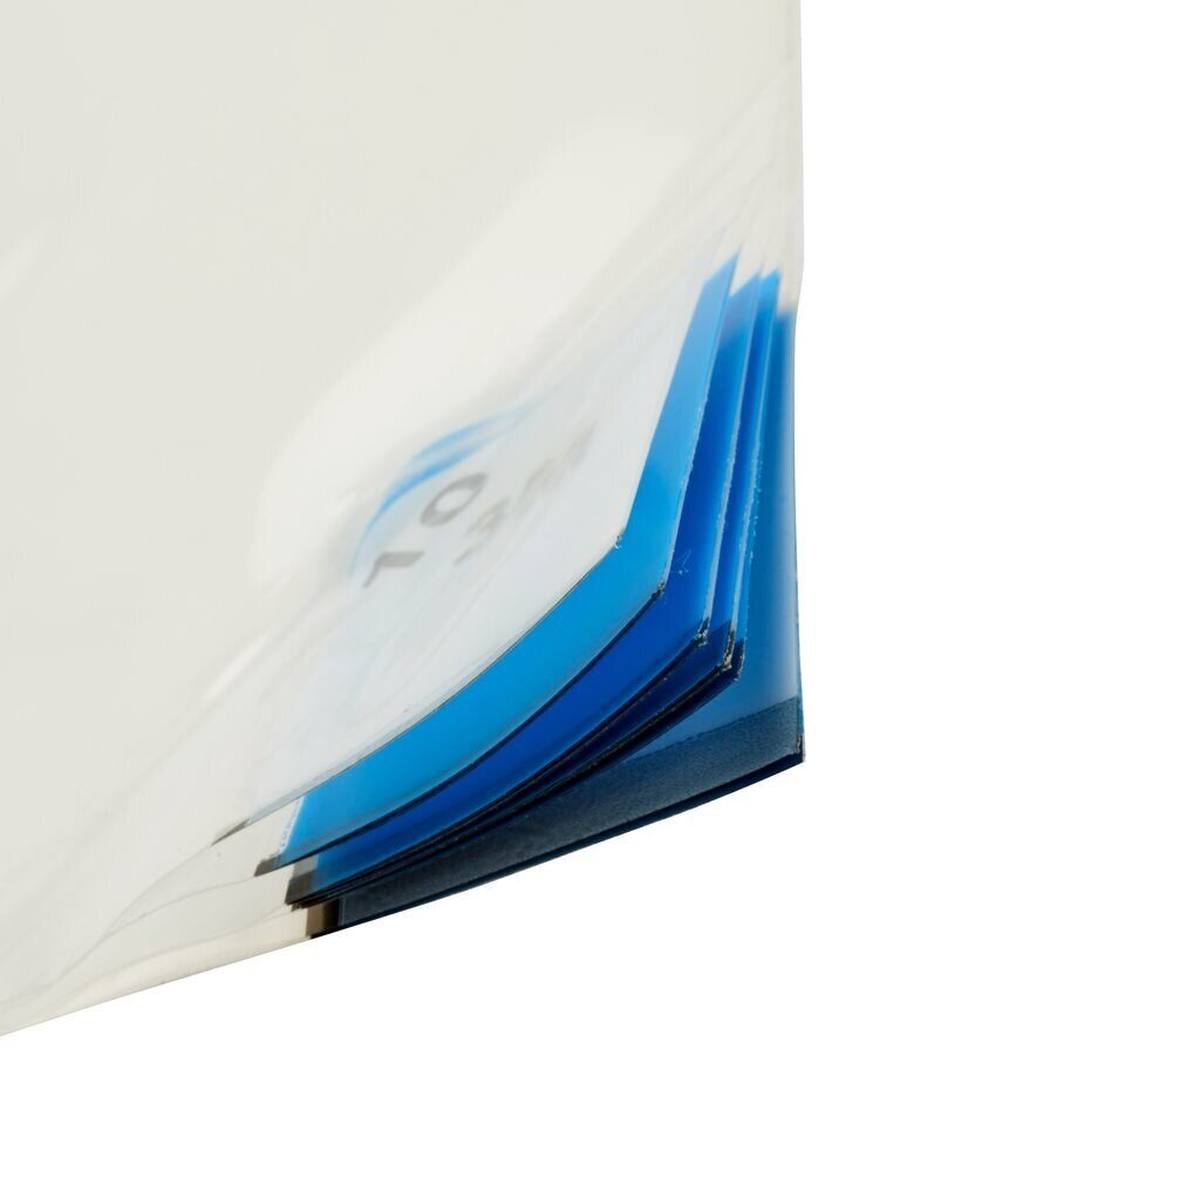 3M 4300 Tapis adhésif pour poussière fine Nomad, blanc, 1,15m x 0,6m, 40pcs couches de polyéthylène transparent